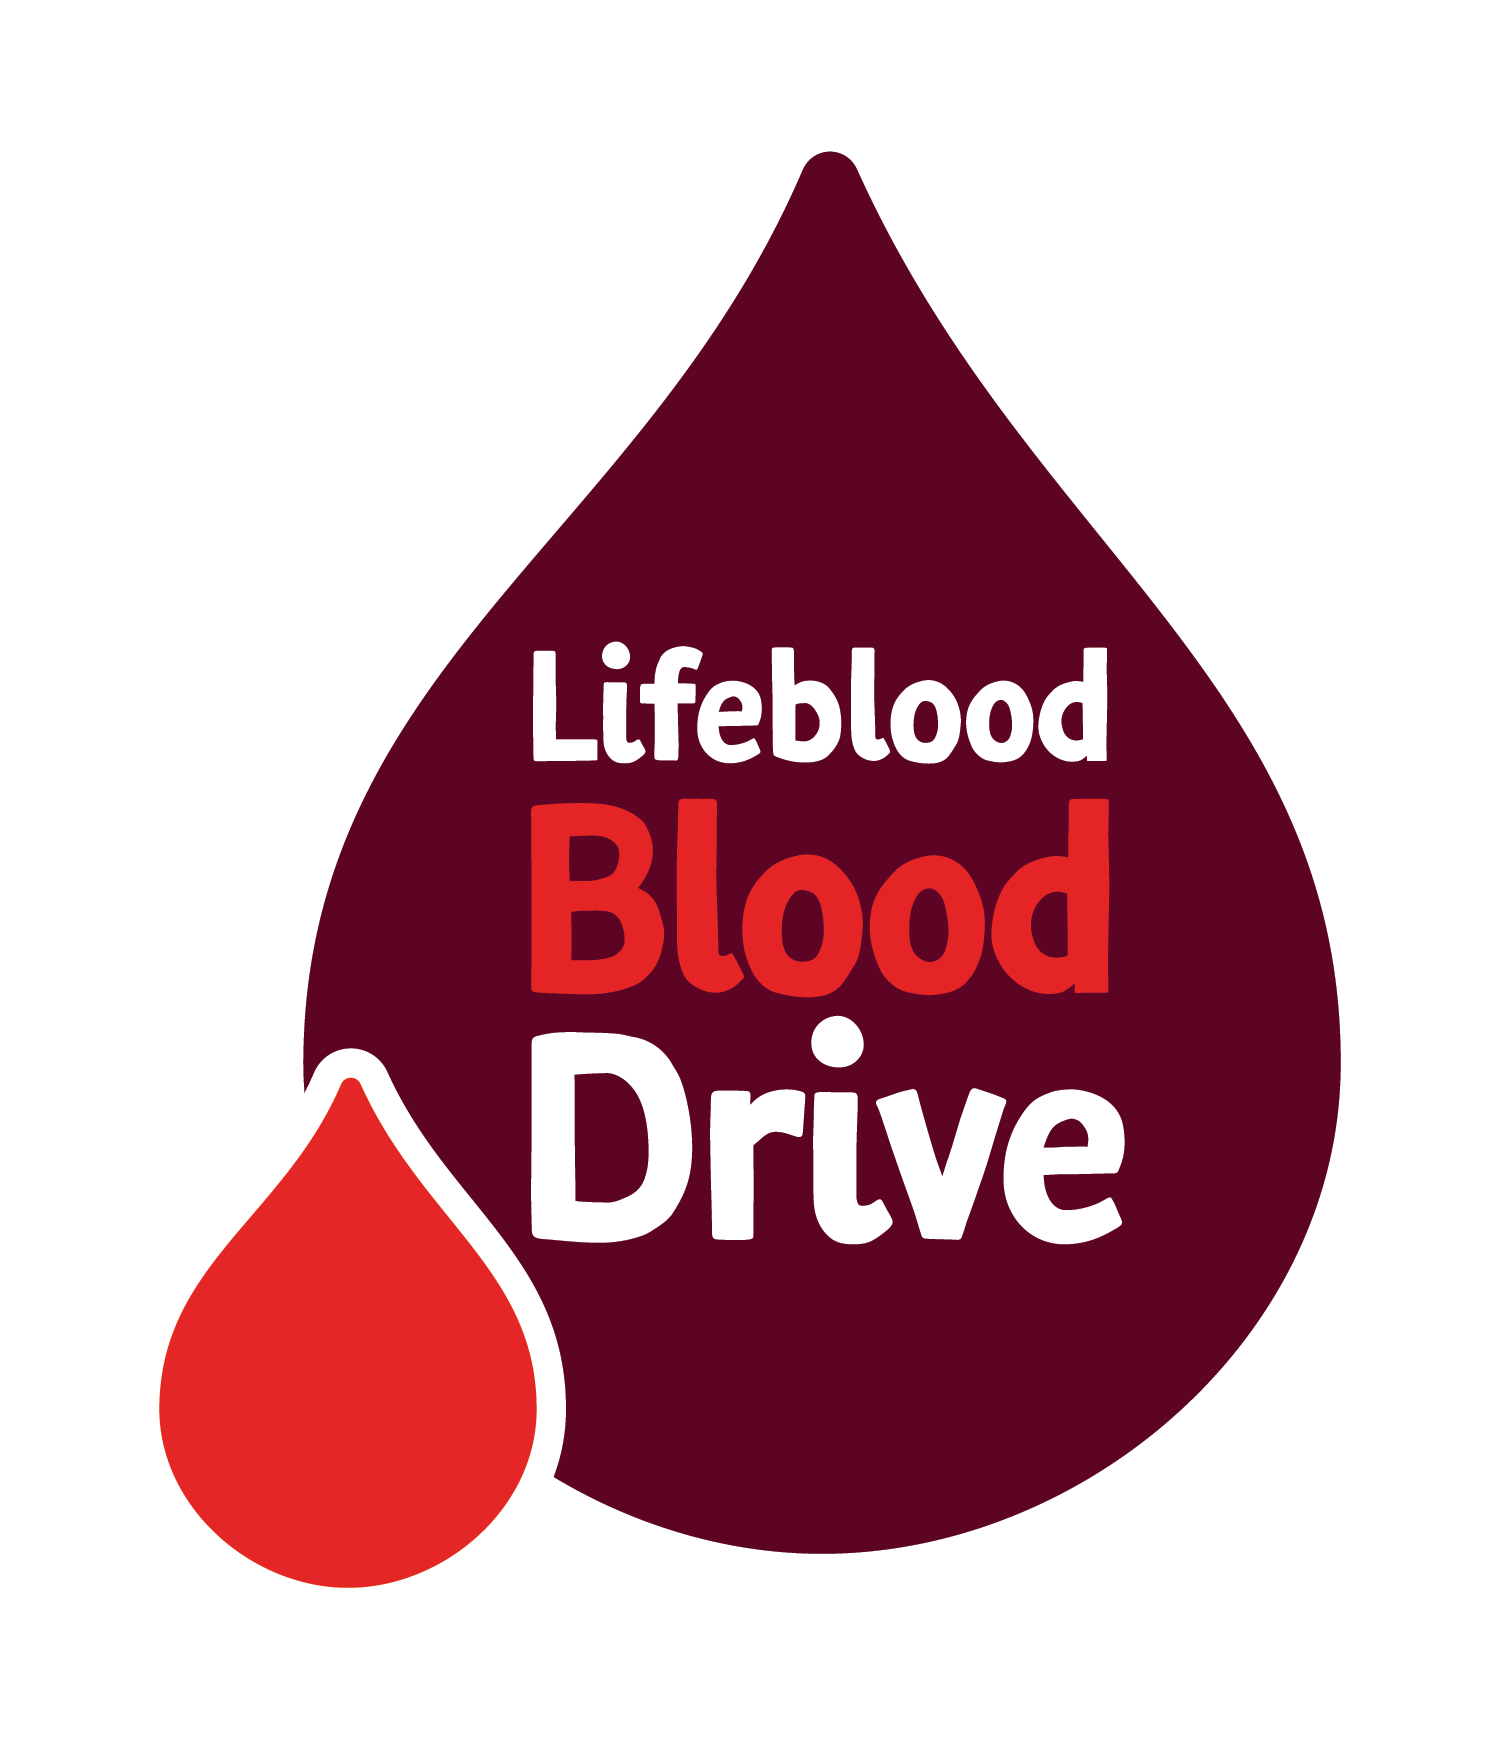 Lifeblood Blood Drive logo